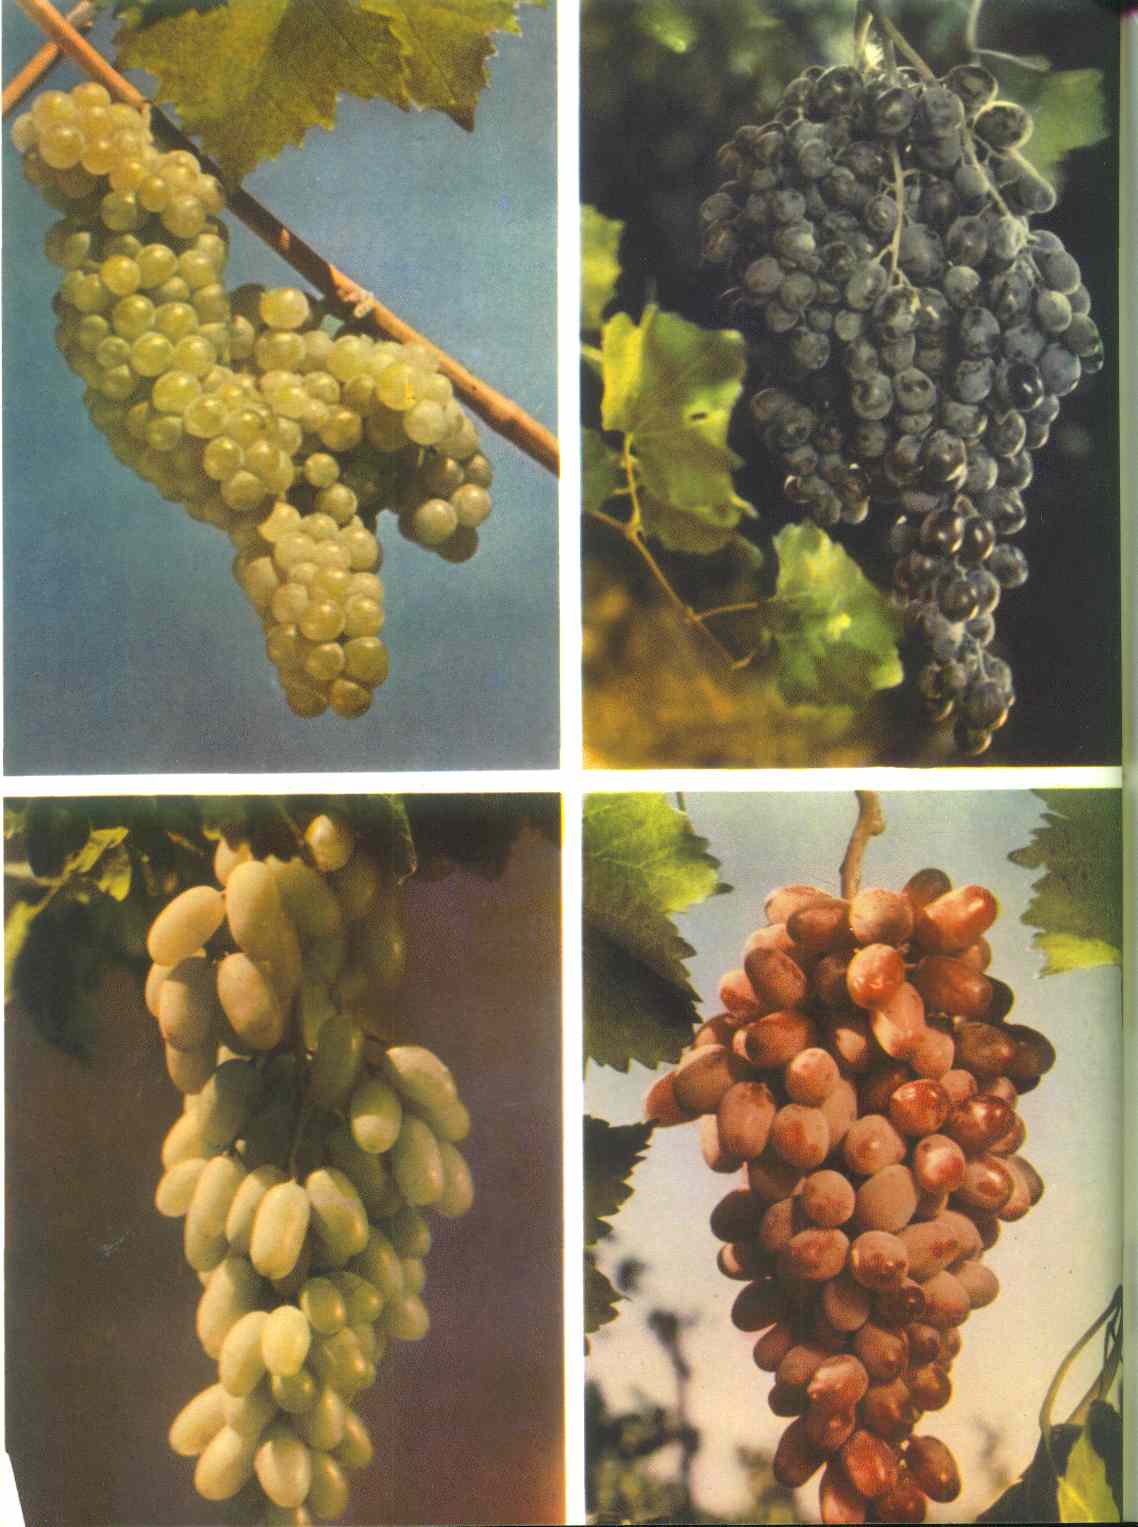 Армянский виноград кишмиш